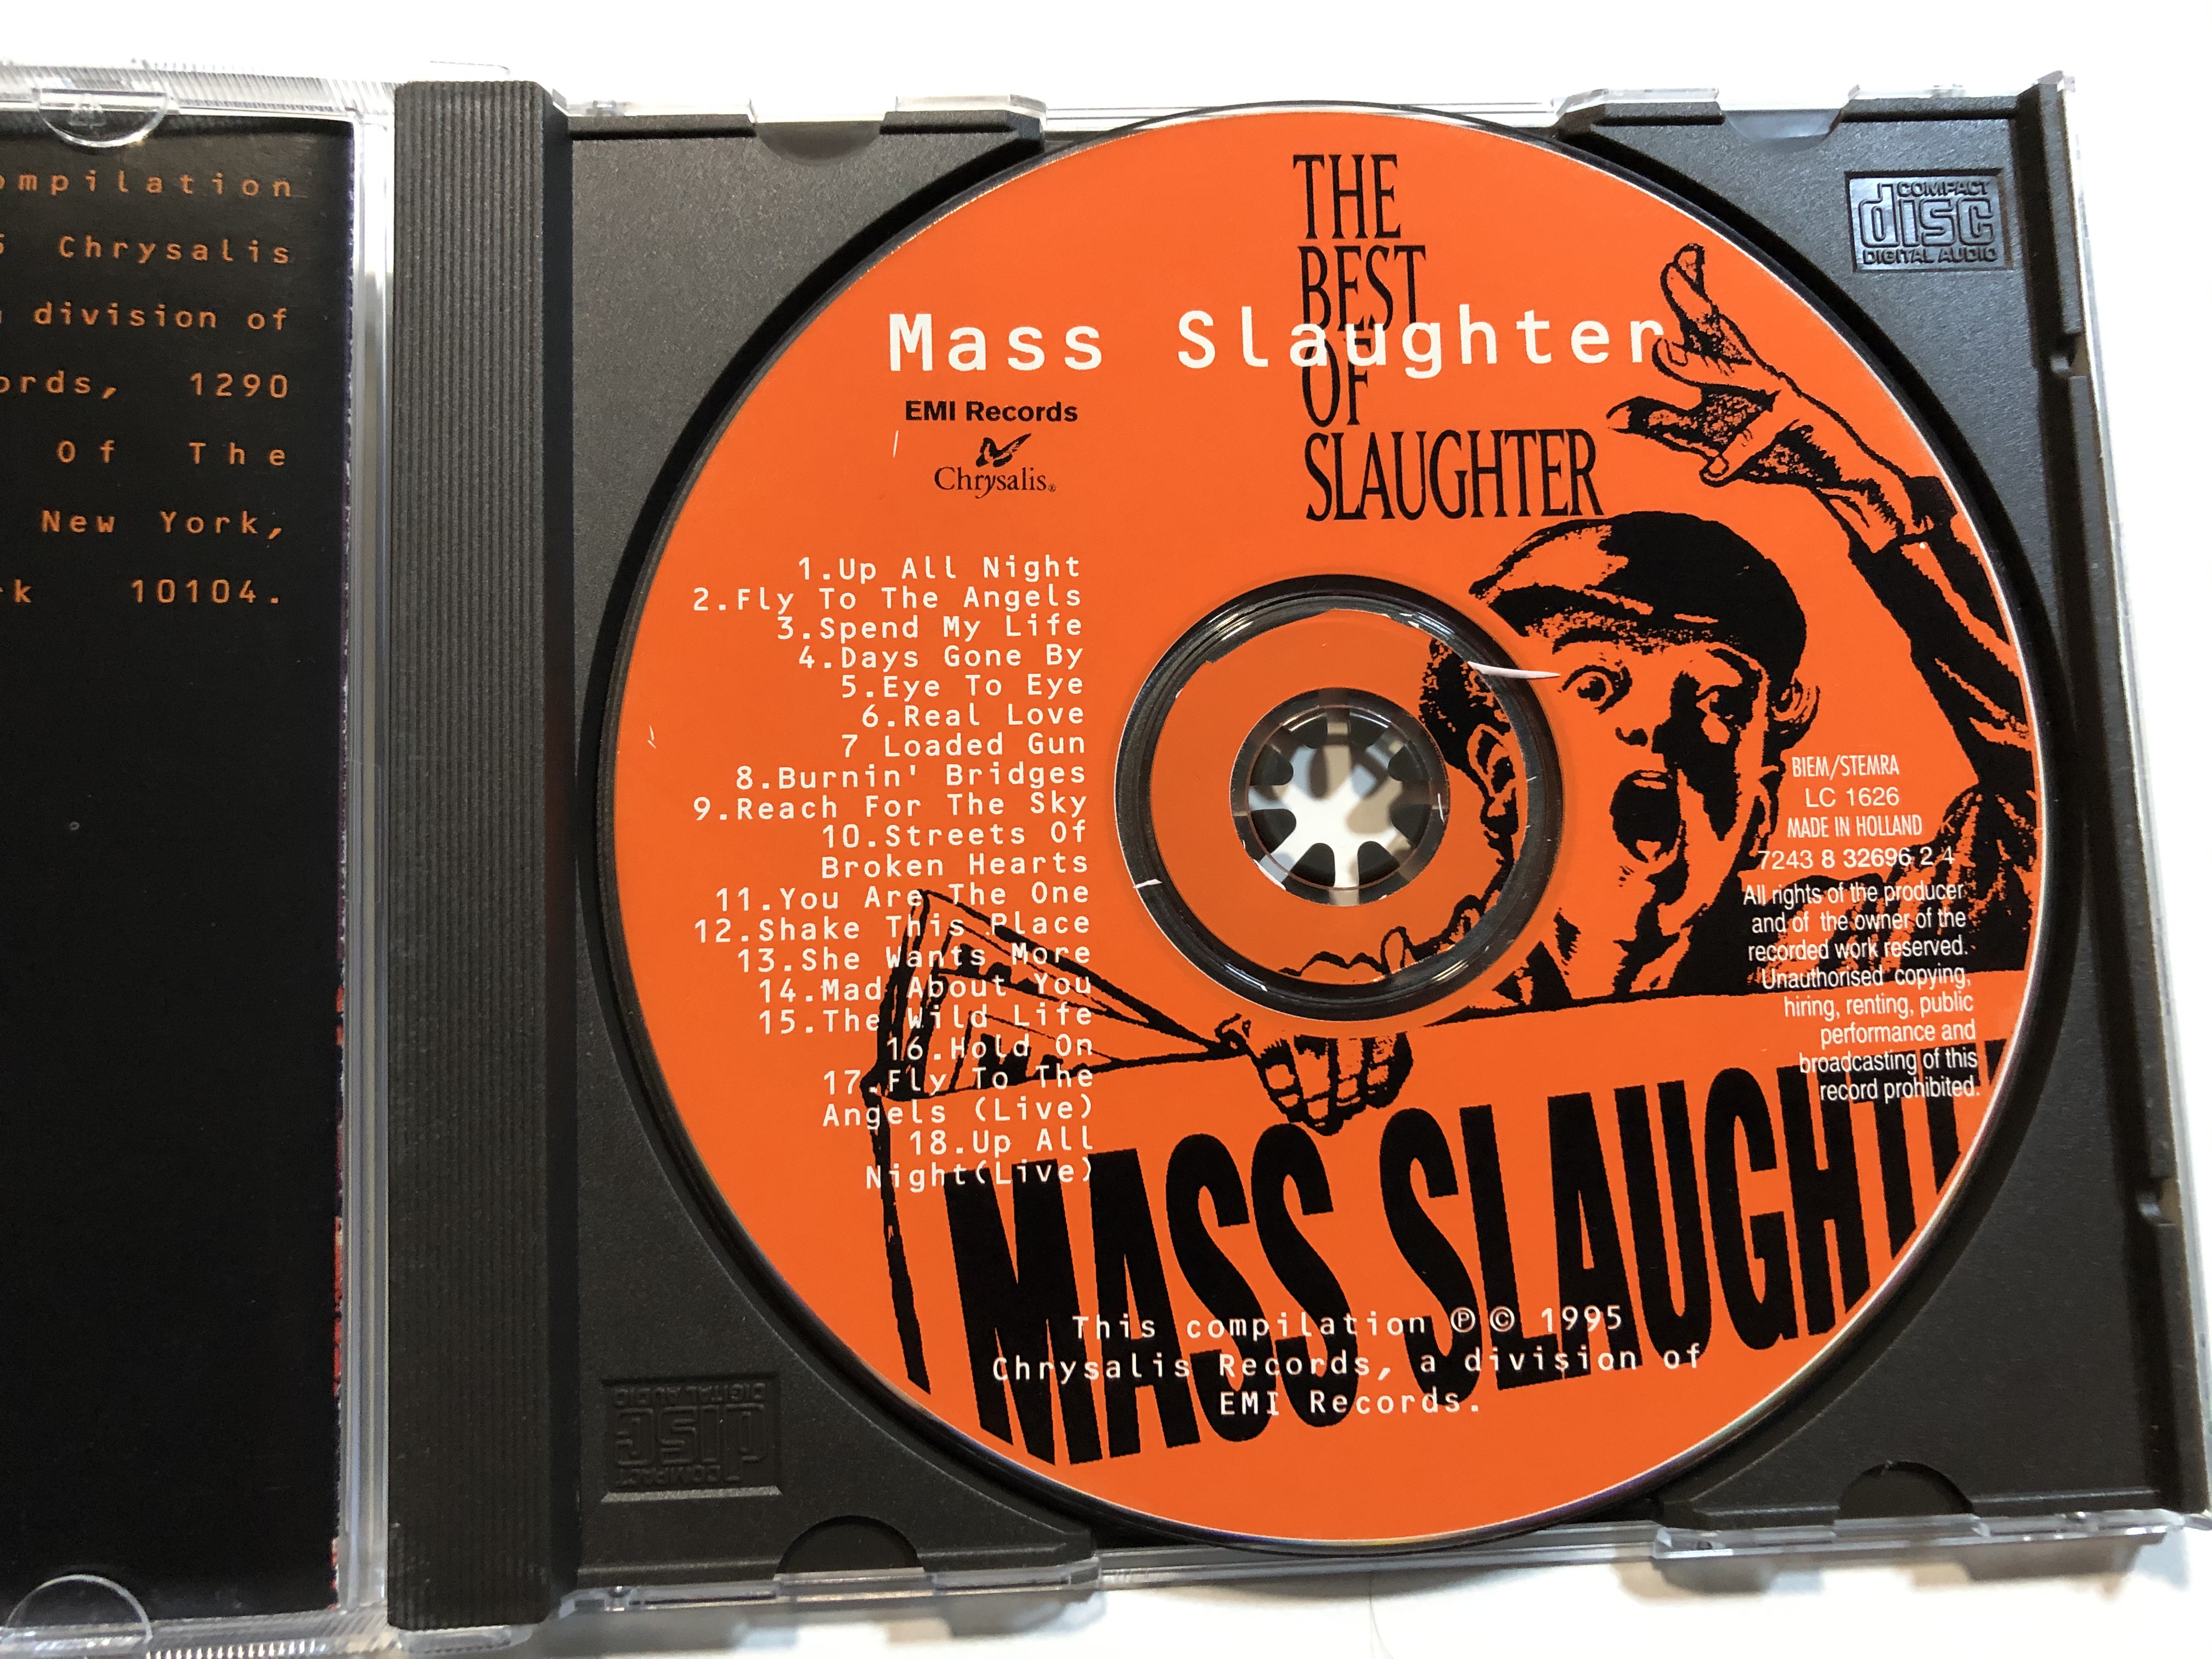 mass-slaughter-the-best-of-slaughter-chrysalis-audio-cd-1995-724383269624-3-.jpg